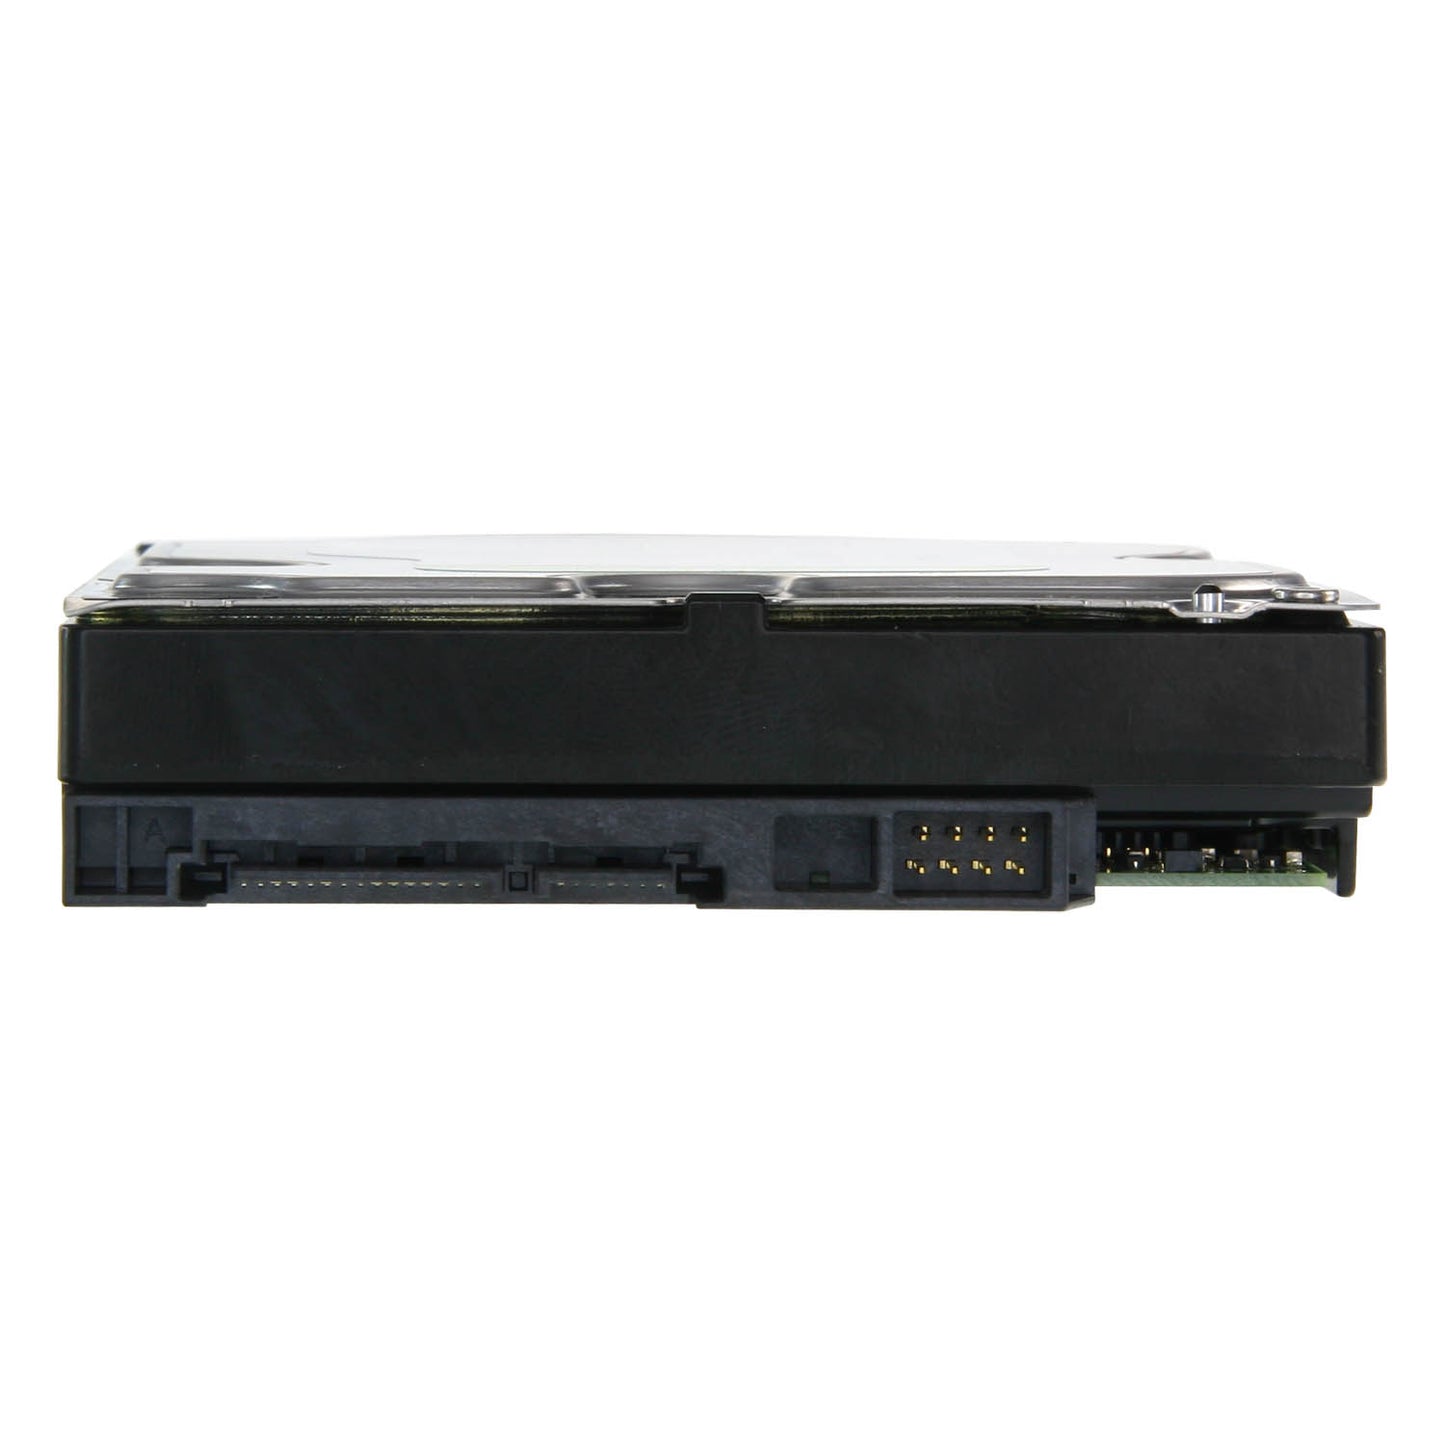 Disco Duro Western Digital - 8 TB de capacidad - Interfaz SATA 6 GB/s - Modelo WD80PURX - Especial para videograbadores - Solo o instalado en DVR